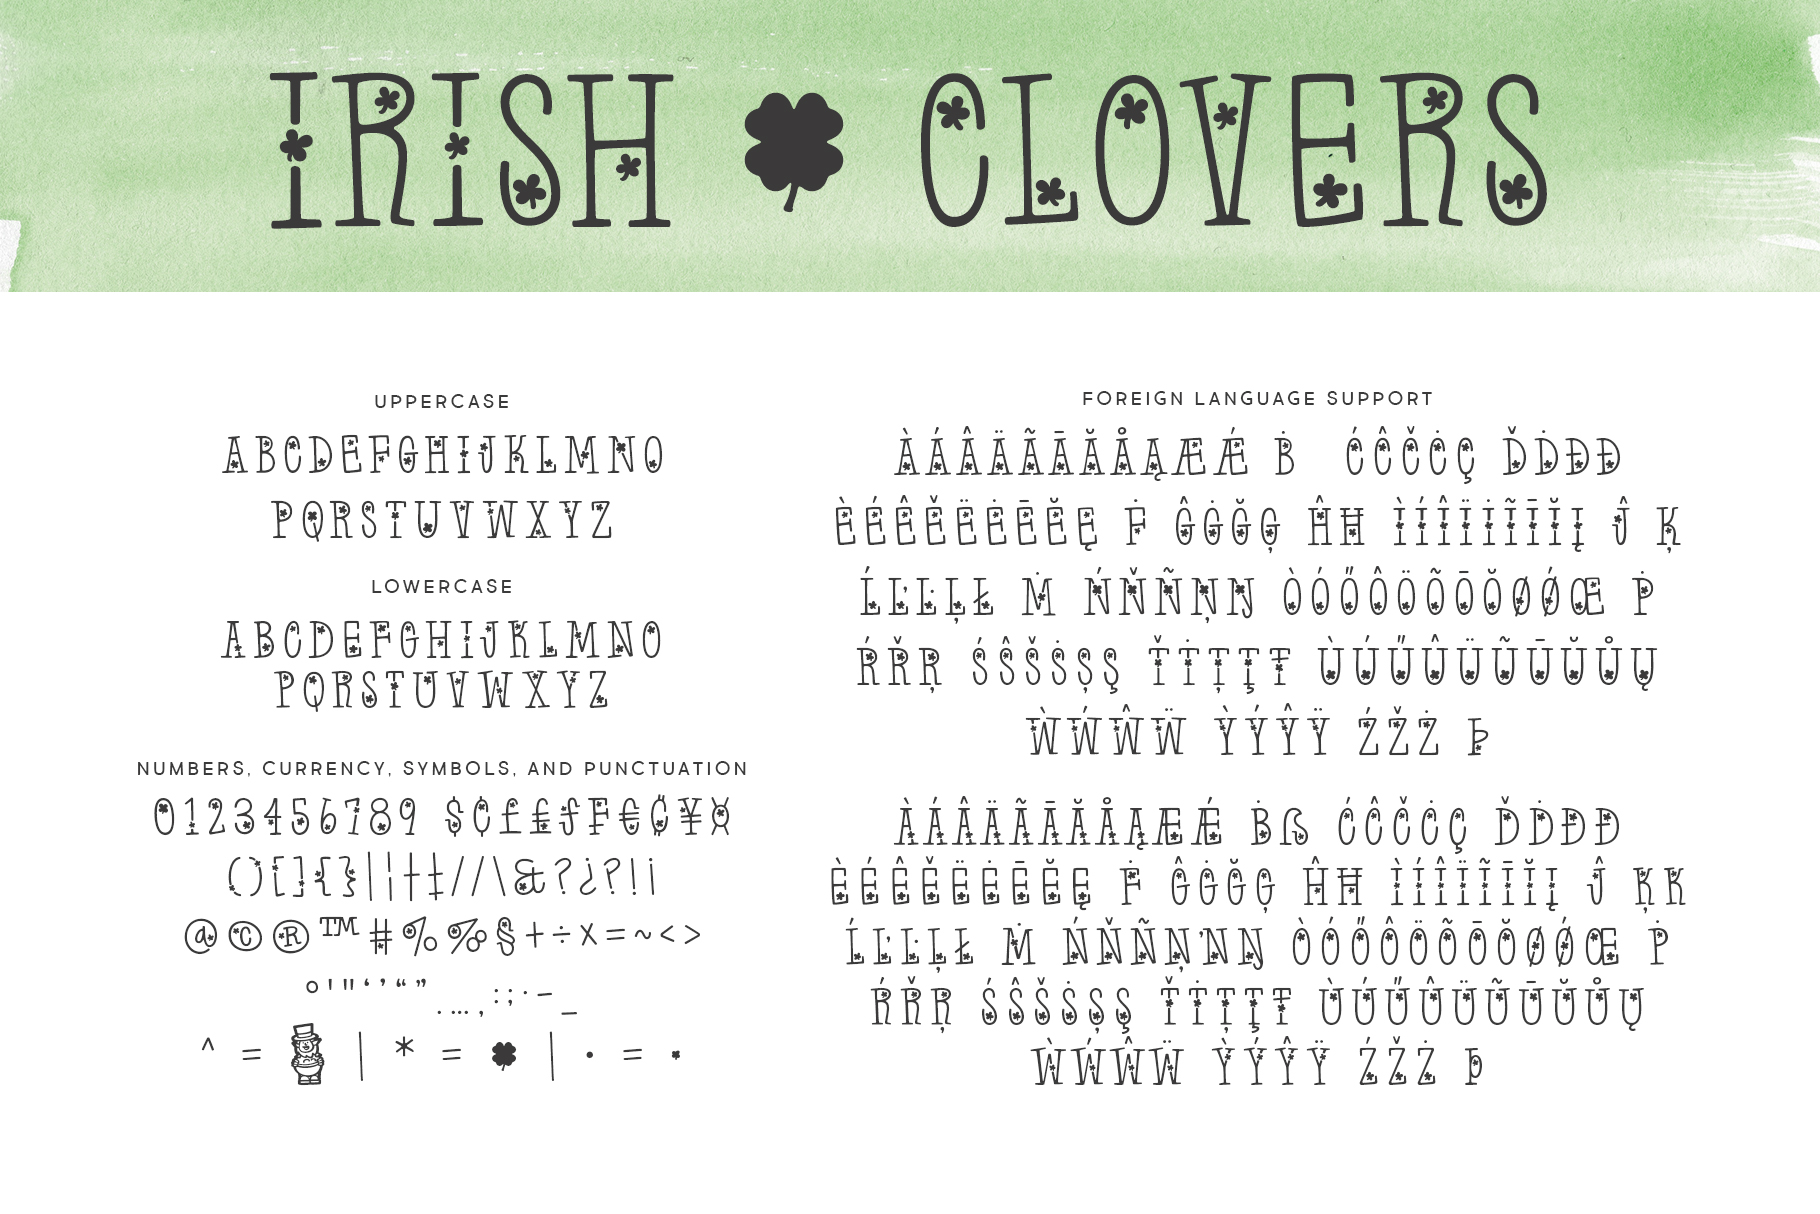 Irish^Clovers